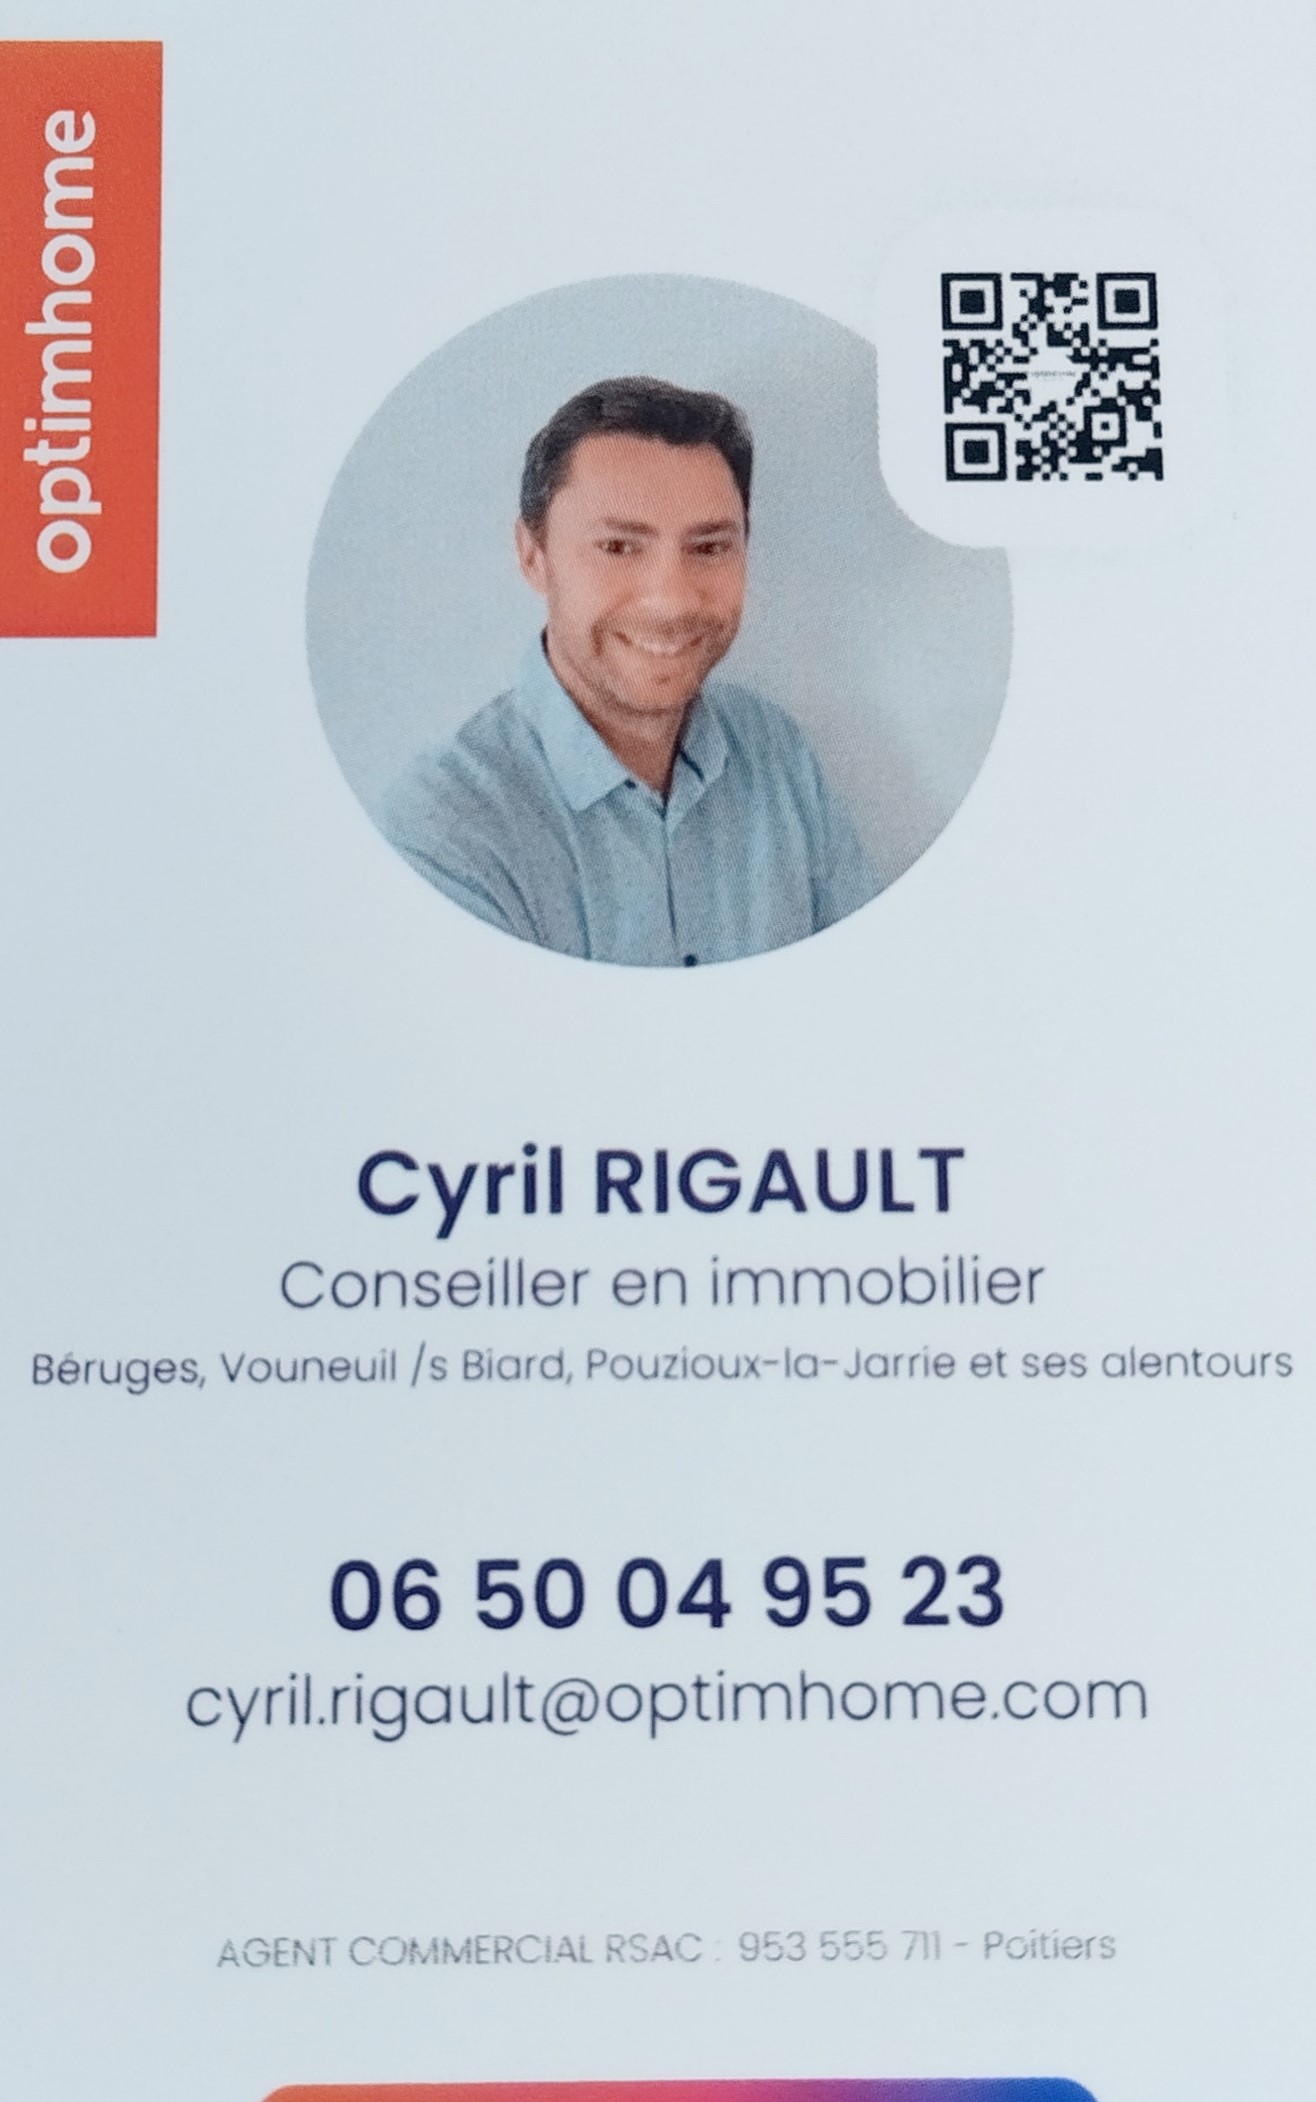 Nouveau professionnel : Cyril Rigault conseiller immobilier